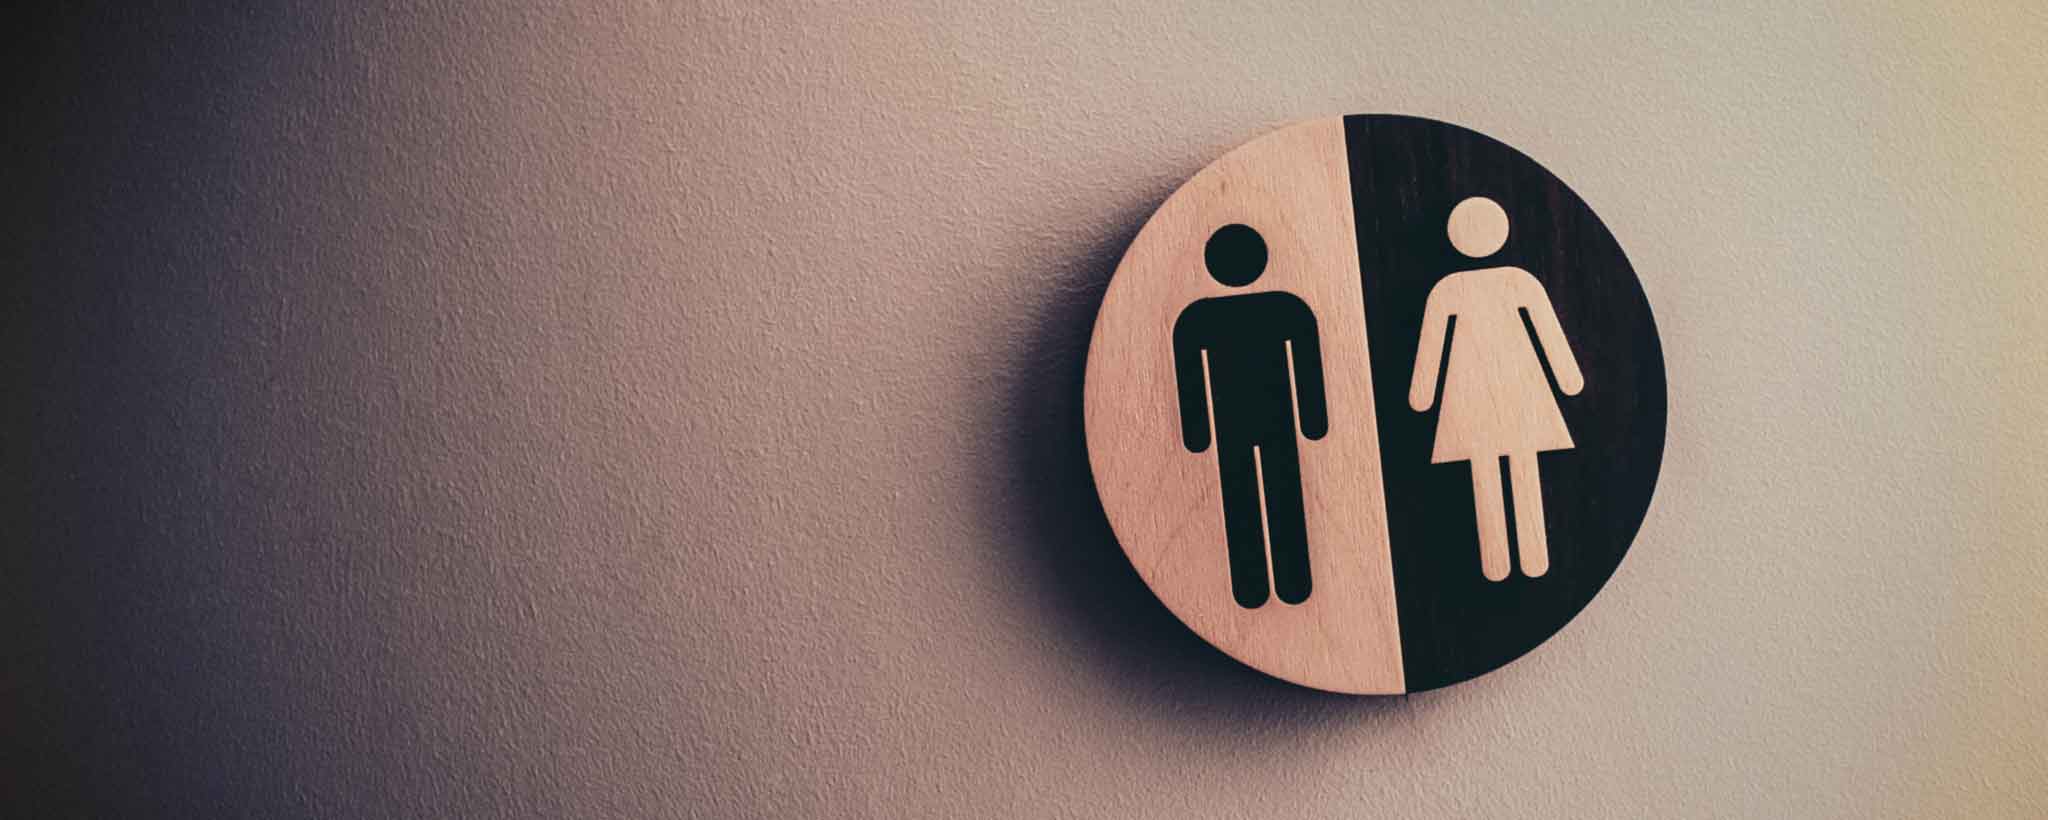 'Restroom gender signs'